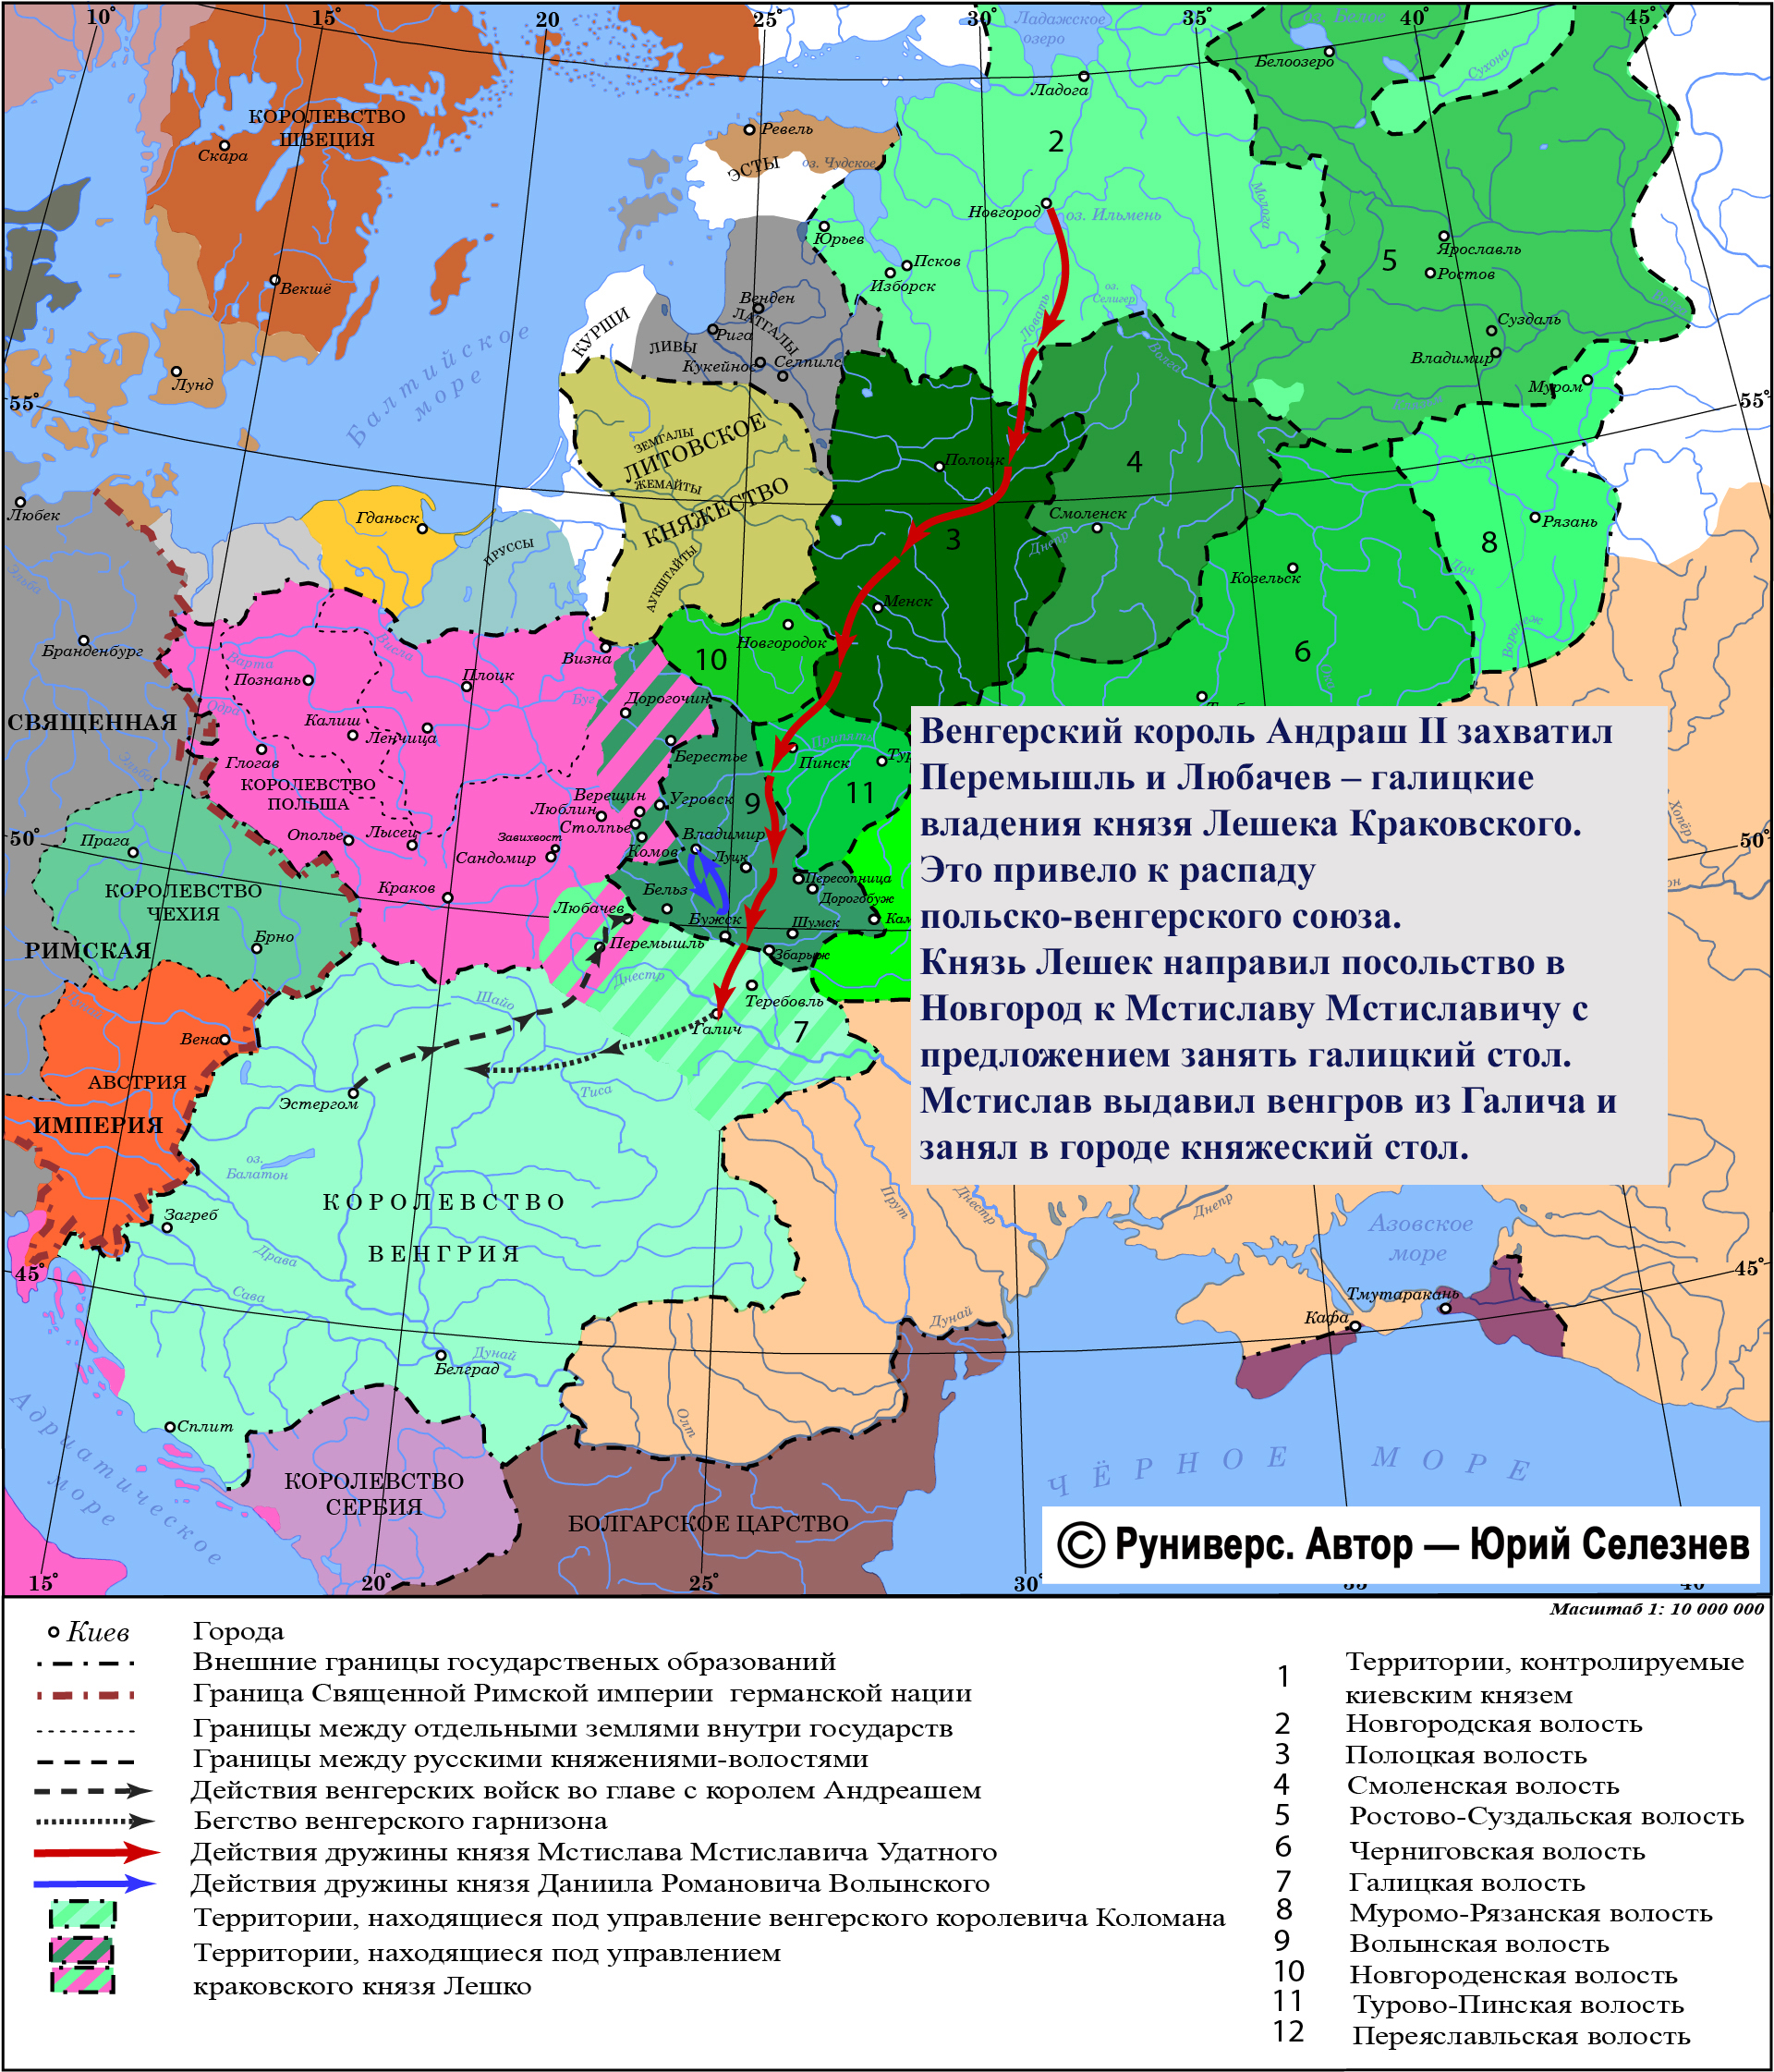 Польско венгерский Союз карта. Карта средневековой Руси. Наследственное владение князя